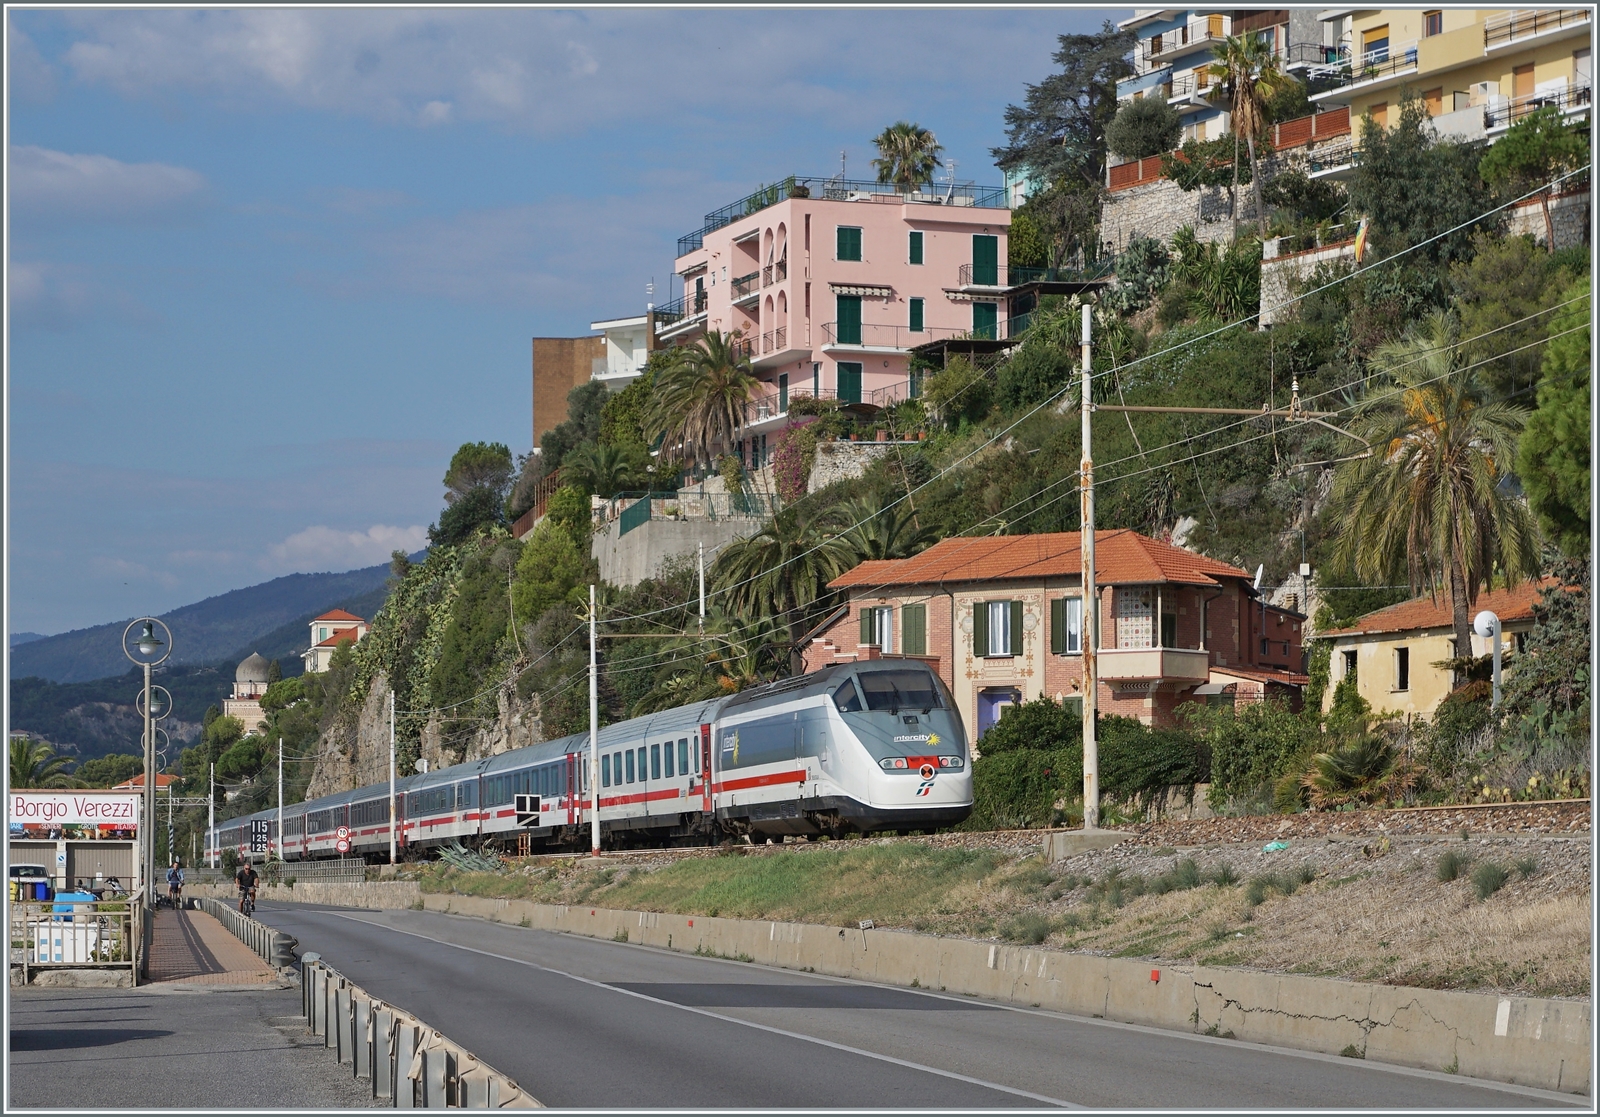 Der von je einer E 414 an der Spitze und am Schluss geführt, erreicht der FS Trenitalia IC 631 von Ventimiglia nach Milano bei Borgio Verezzi in Kürze seinen nächsten Halt Finale Ligure. Der Streckenabschnitt von Finale Ligure nach Andora ist zur Zeit der letzte Streckenabschnitt der Strecke Genova - Ventimiglia welcher noch auf dem ursprünglichen Trasse dem Meer und durch die Ortschaften entlang führt und soll längerfristig auch neu trassiert werden.

22. September 2022